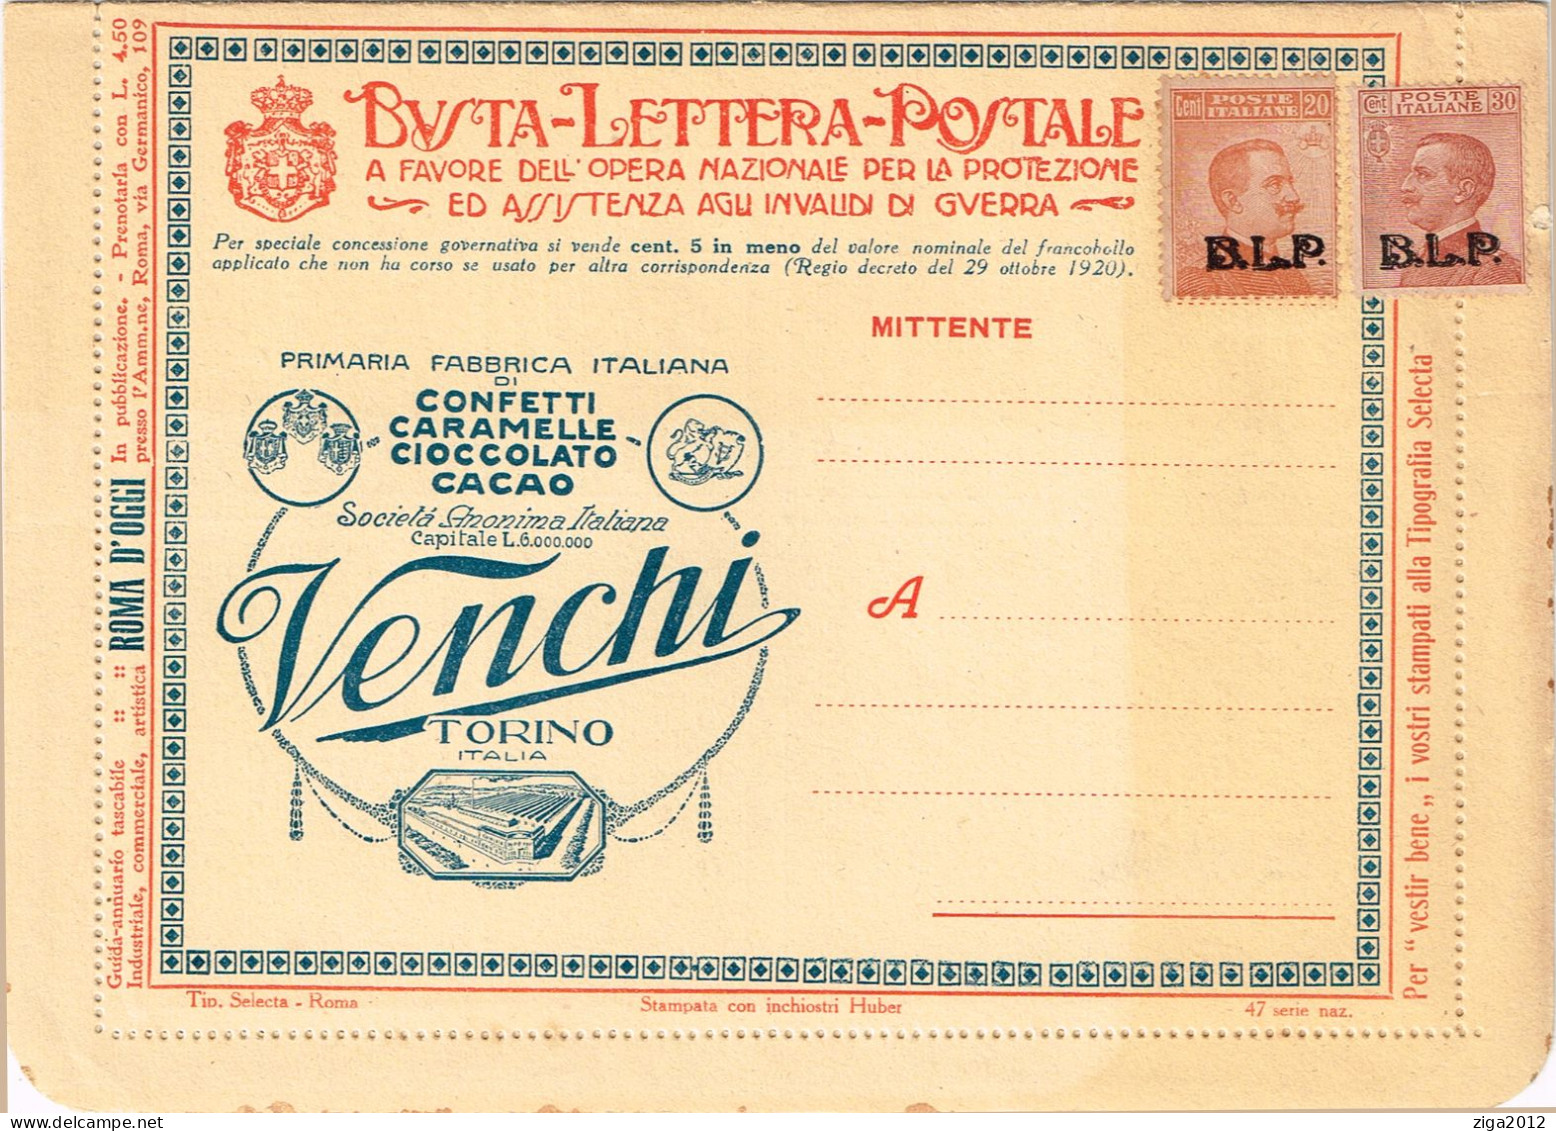 ITALY 1923 B.L.P. BUSTA LETTERA POSTALE CON C.20 III° TIPO + C.30 III° TIPO NUOVA E COMPLETA - Reklame